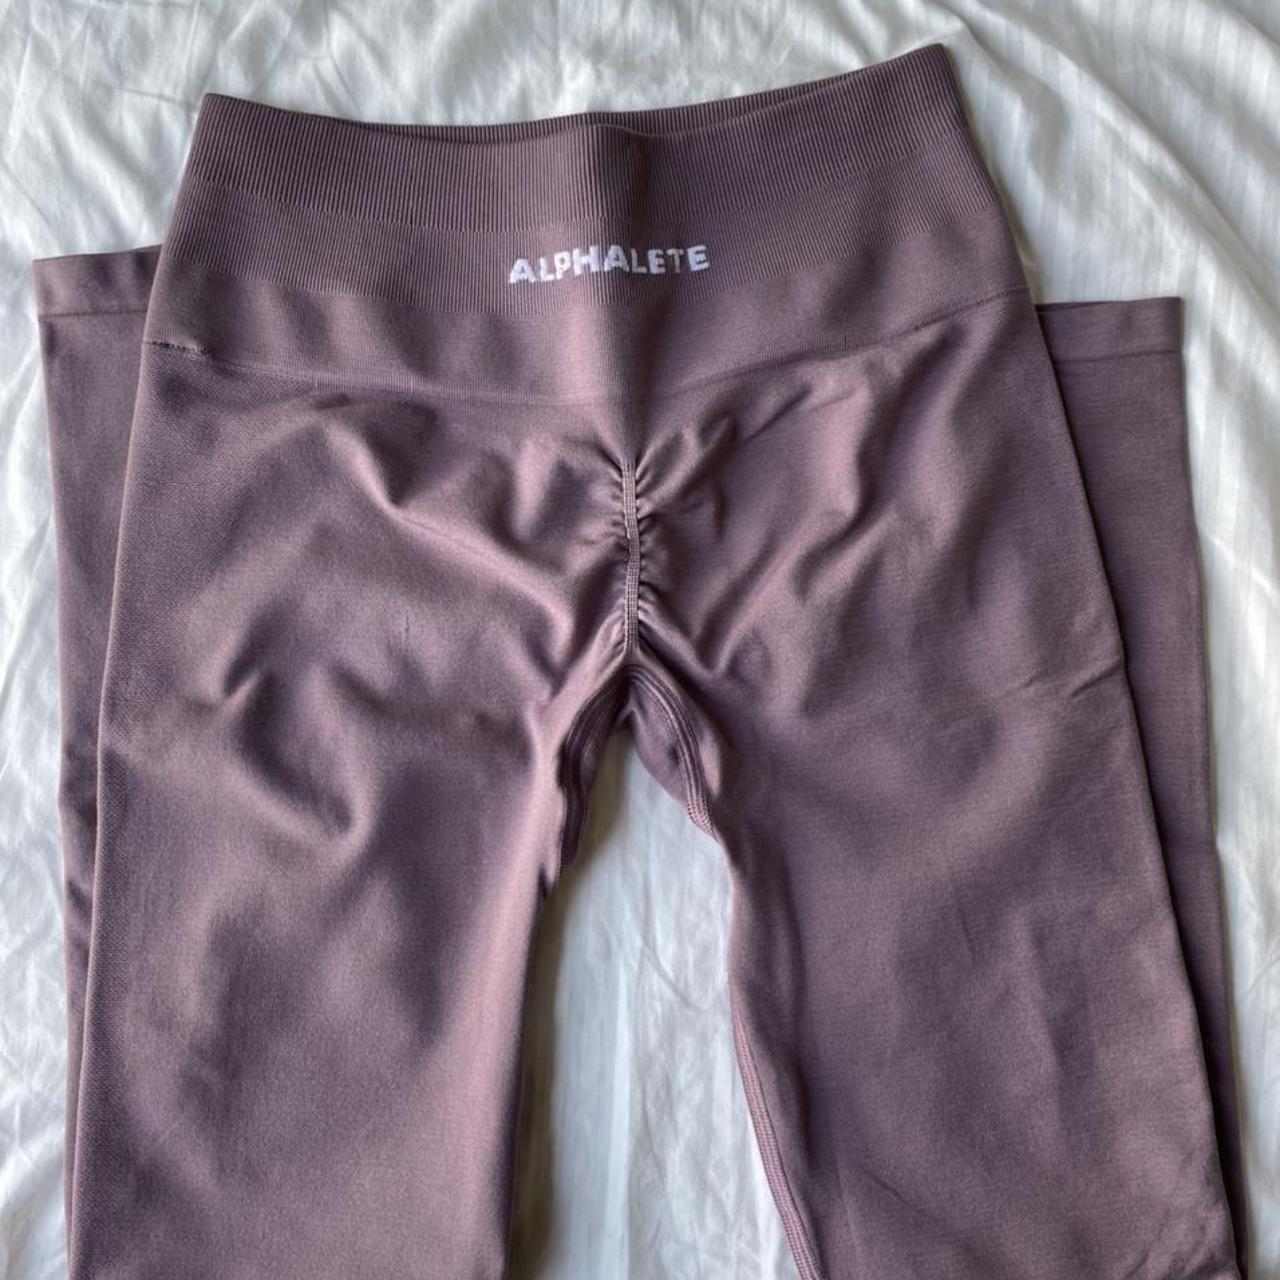 Alphalete Amplify Leggings in Passive Purple (Size M), Women's